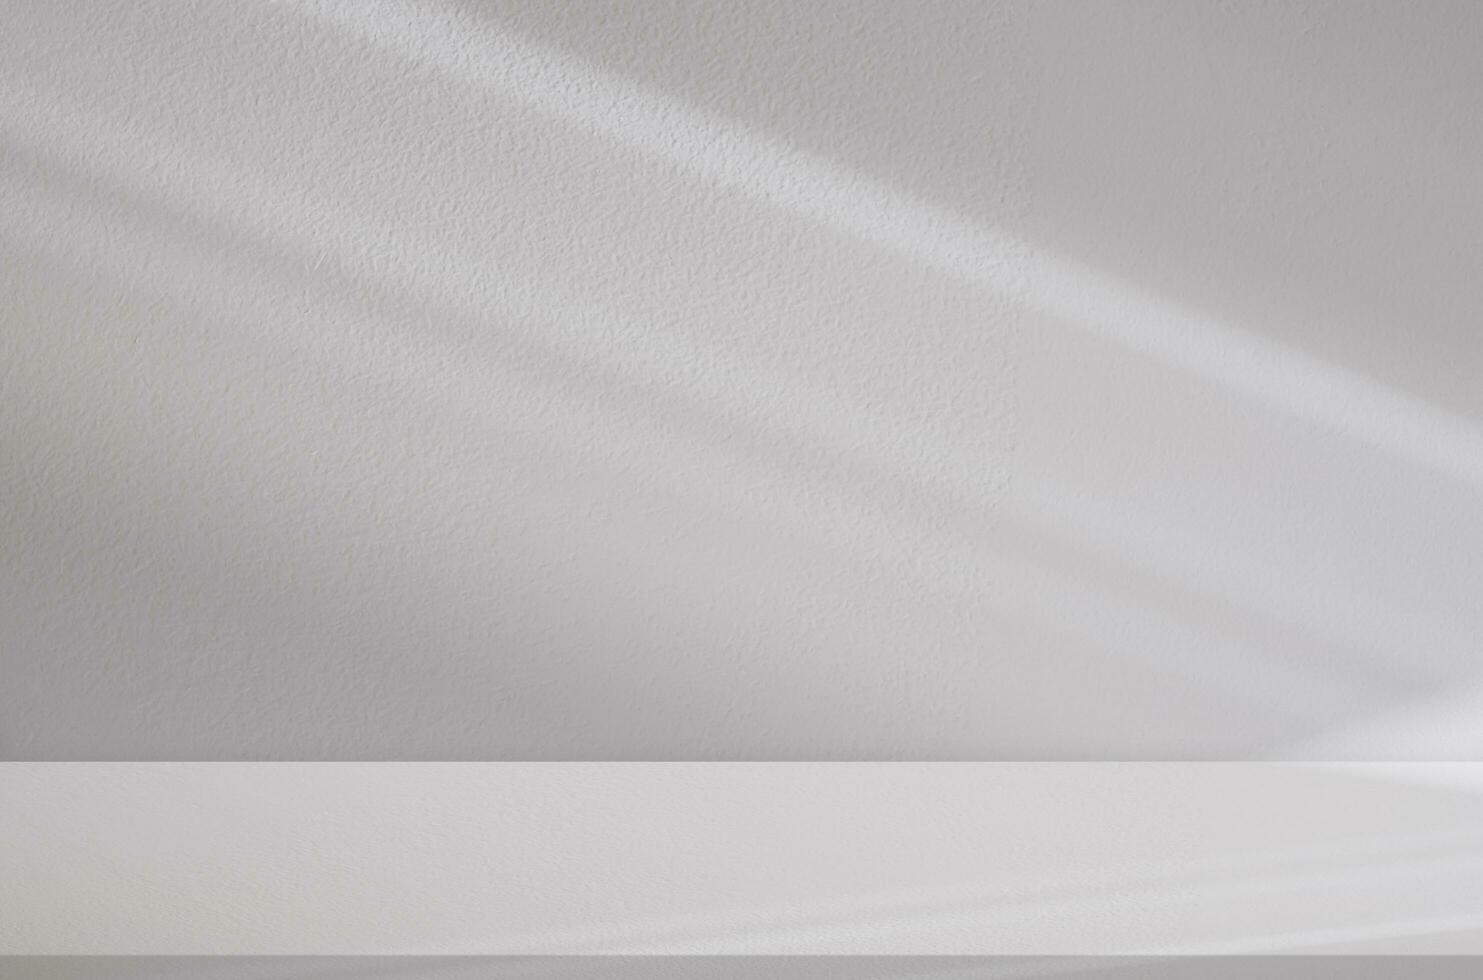 blanco pared hormigón estudio antecedentes con sombra y luz de sol efecto en piso, vacío fondo monitor gris cemento áspero superficie con naturaleza luz, pancarta para cosmética producto presentación foto